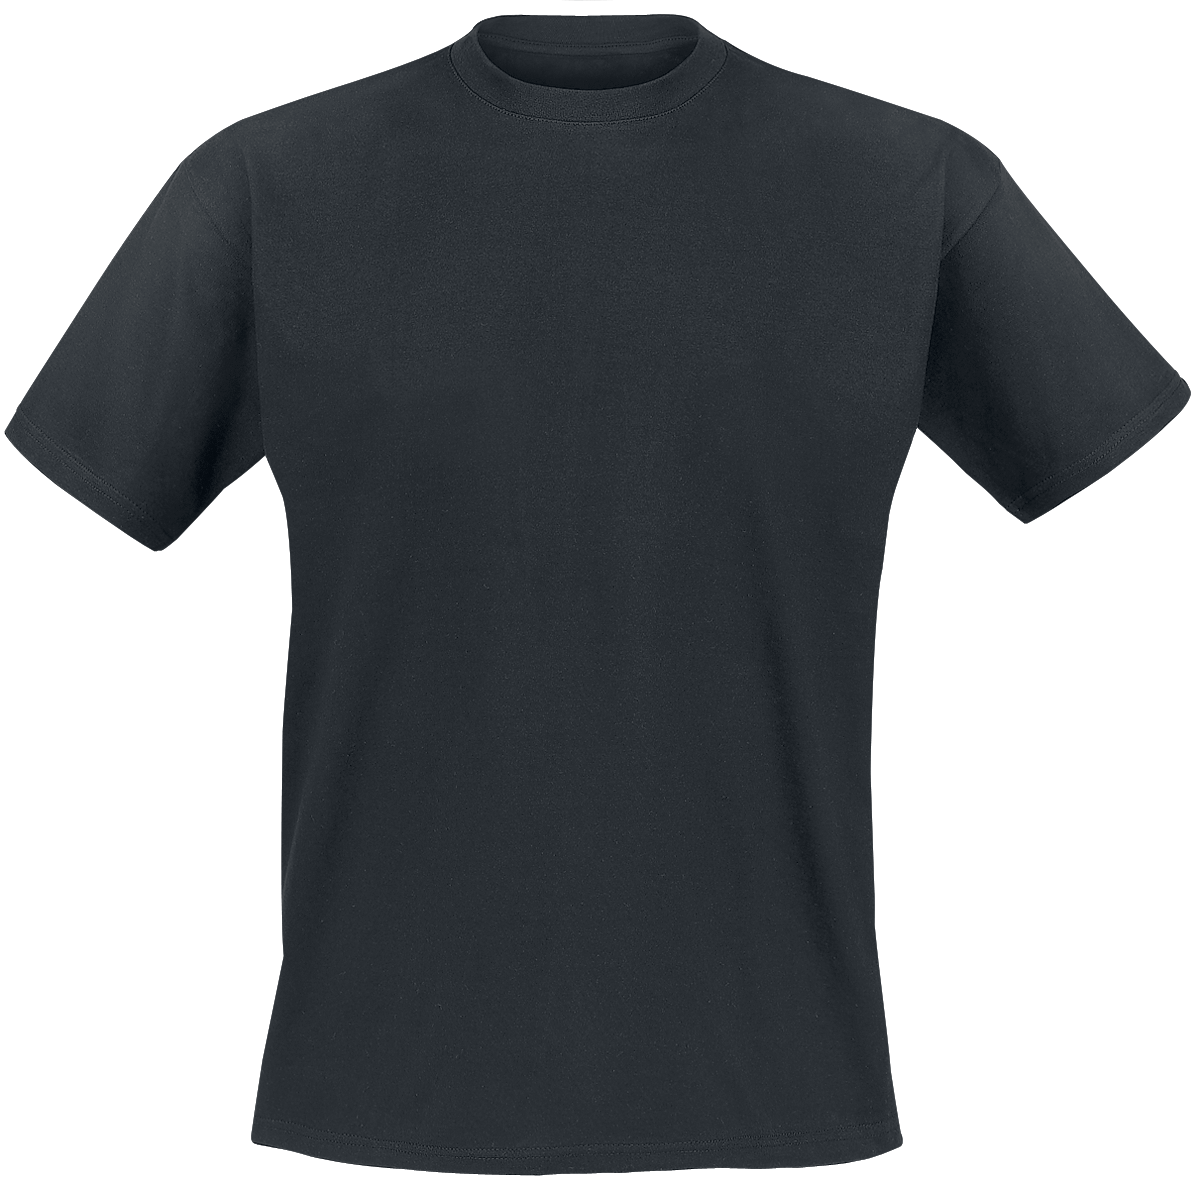 Genesis - Mad Hatter - T-Shirt - schwarz - EMP Exklusiv!